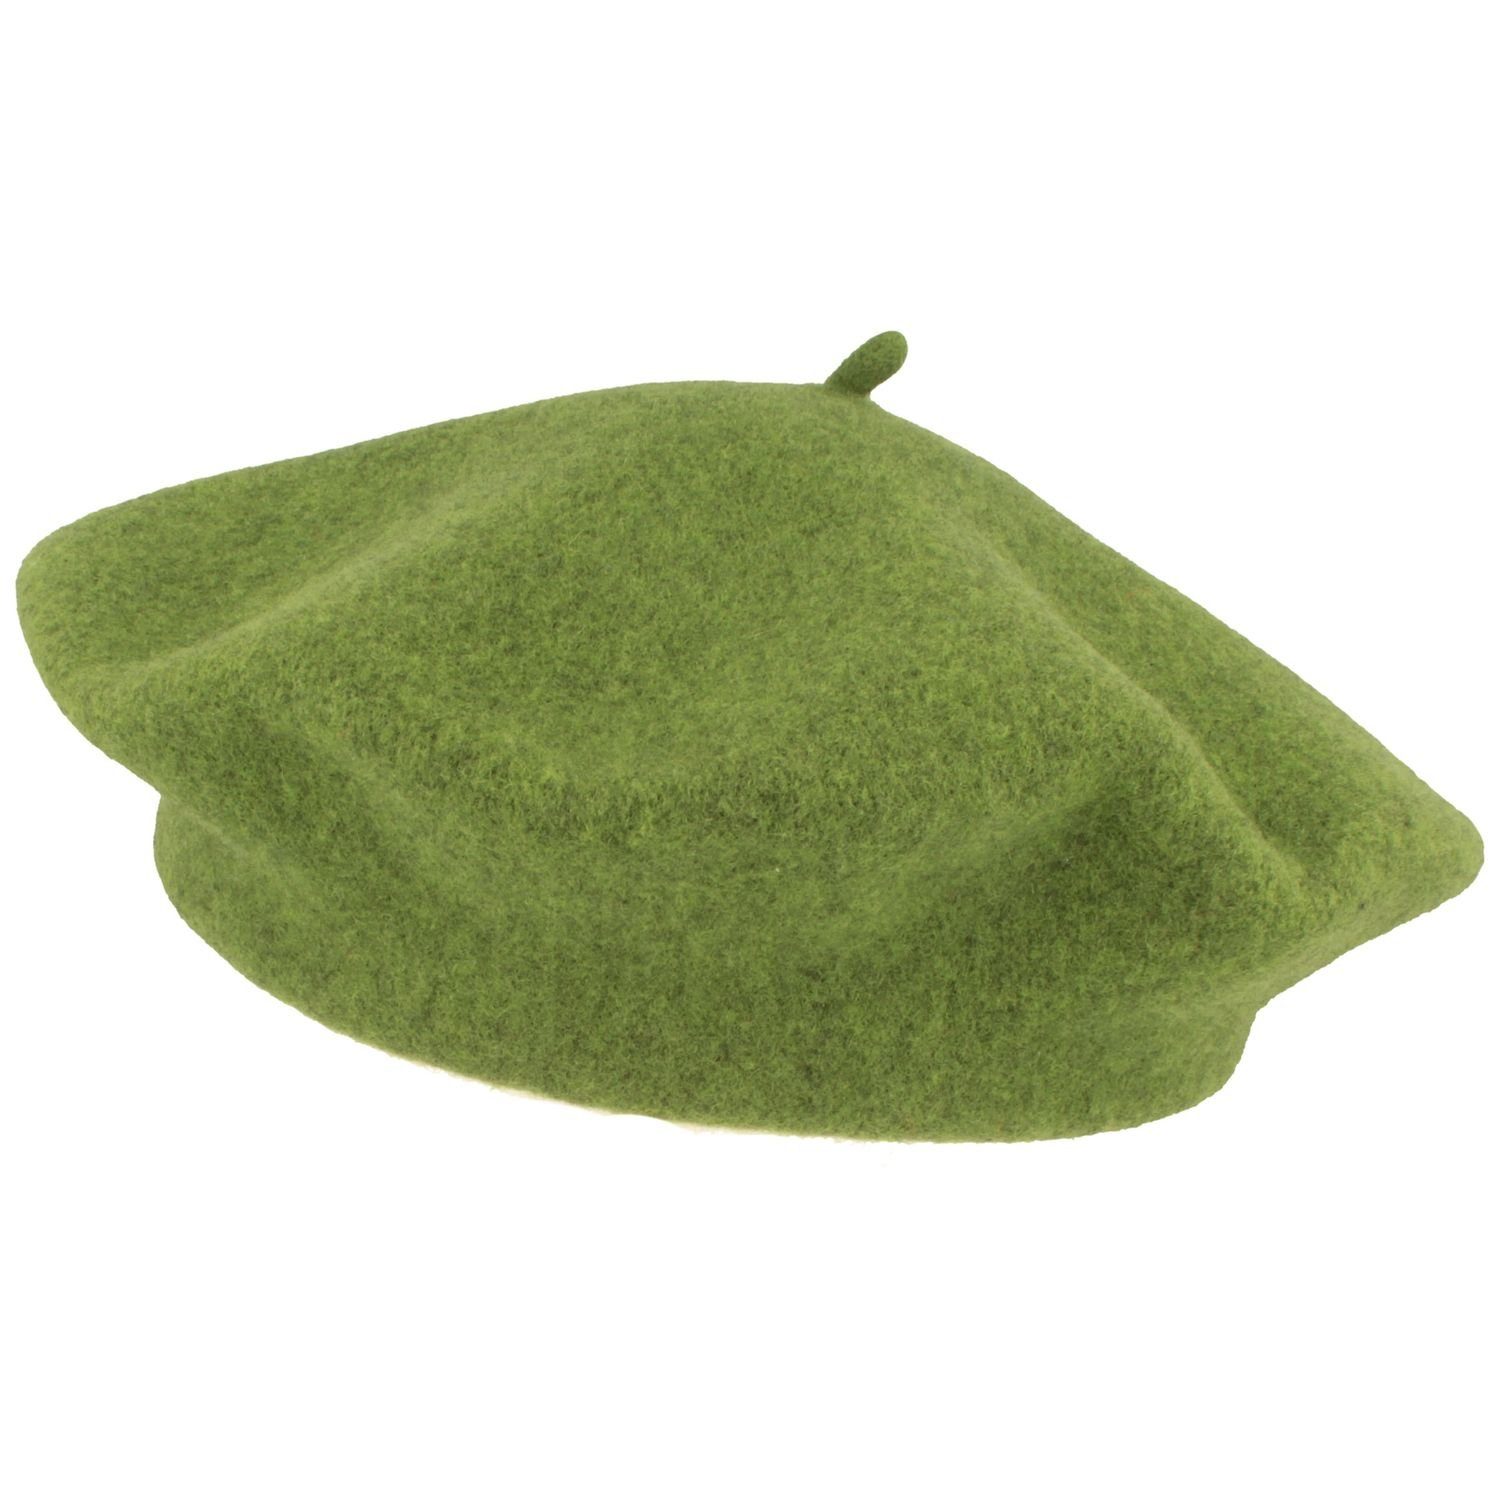 Kopka Baskenmütze klassisch aus meliert Schurwolle grün 100